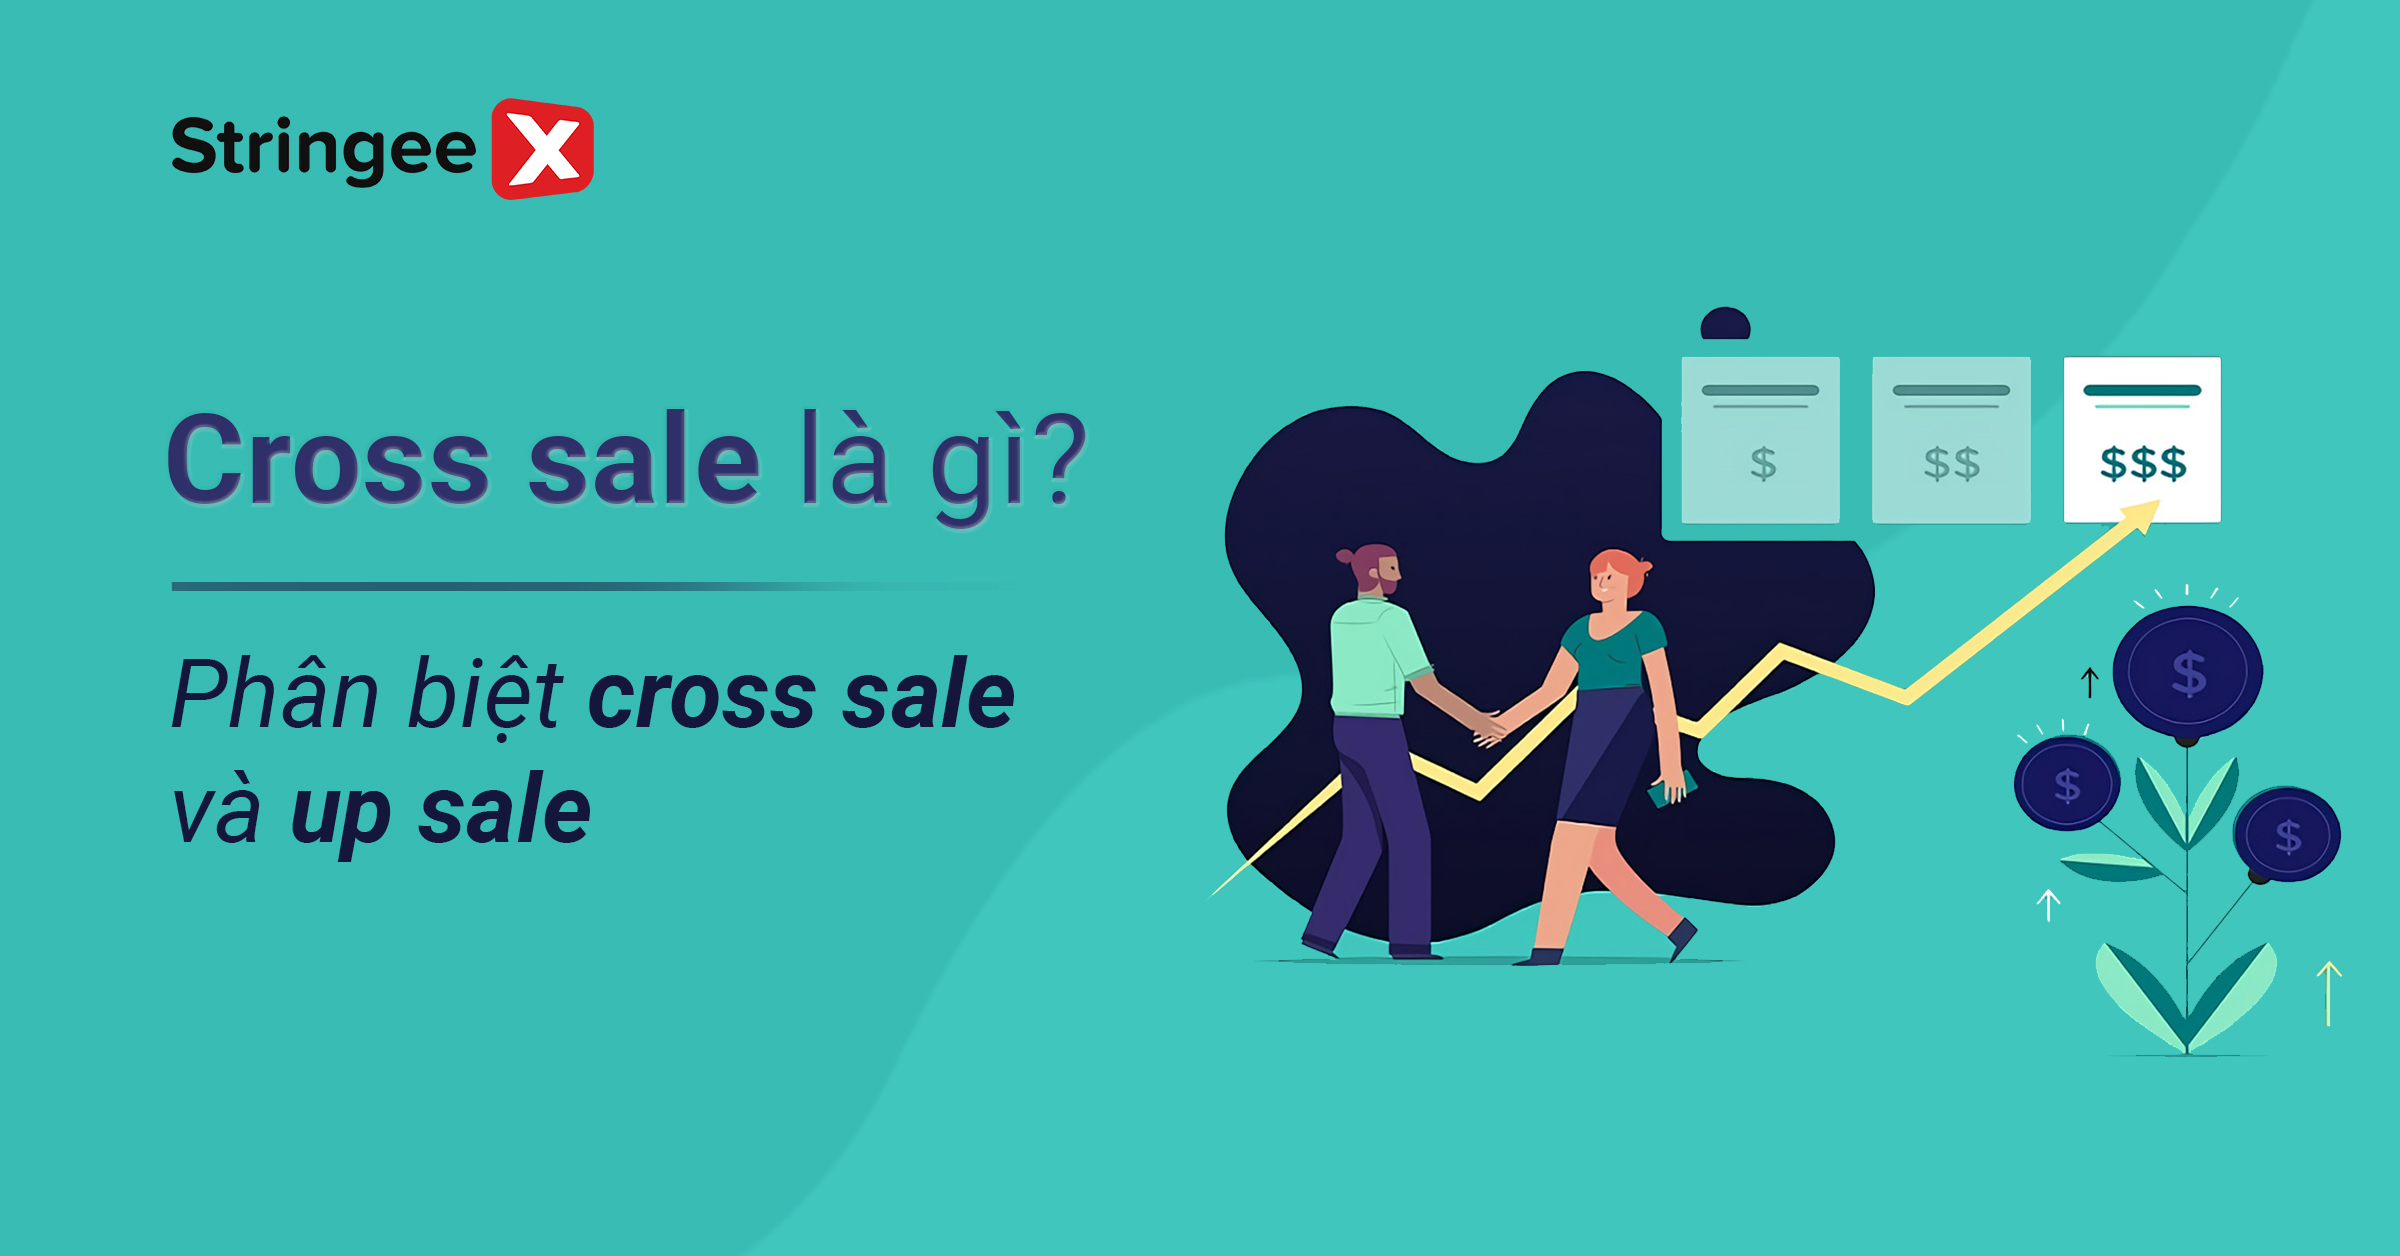 Cross sale là gì? Các tips để ứng dụng chiến  lược cross sale hiệu quả